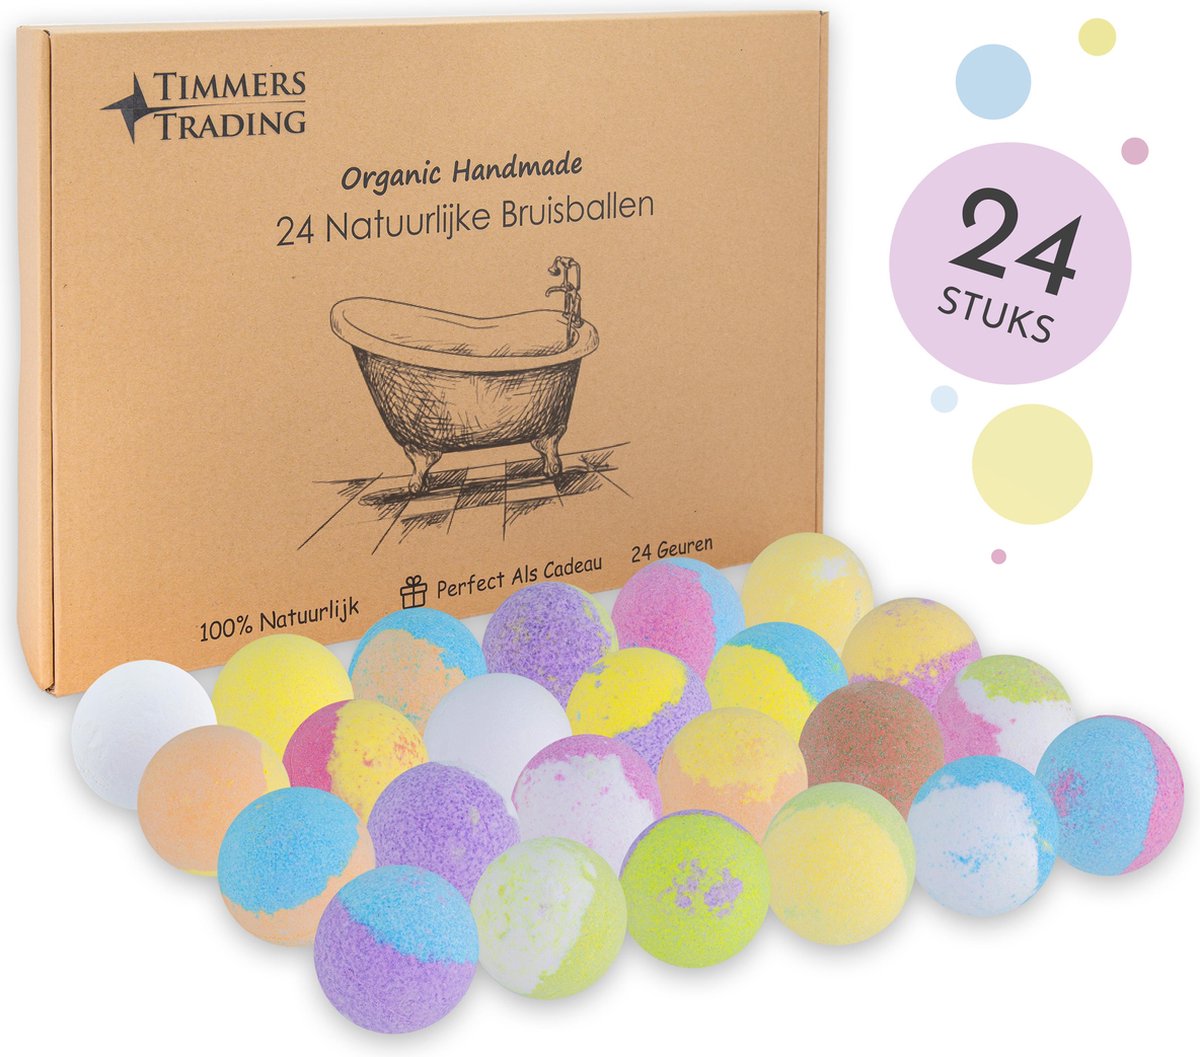 Bruisballen voor bad – XL maat – 24 unieke geuren en kleuren – 100% Natuurlijk bruisballen kind